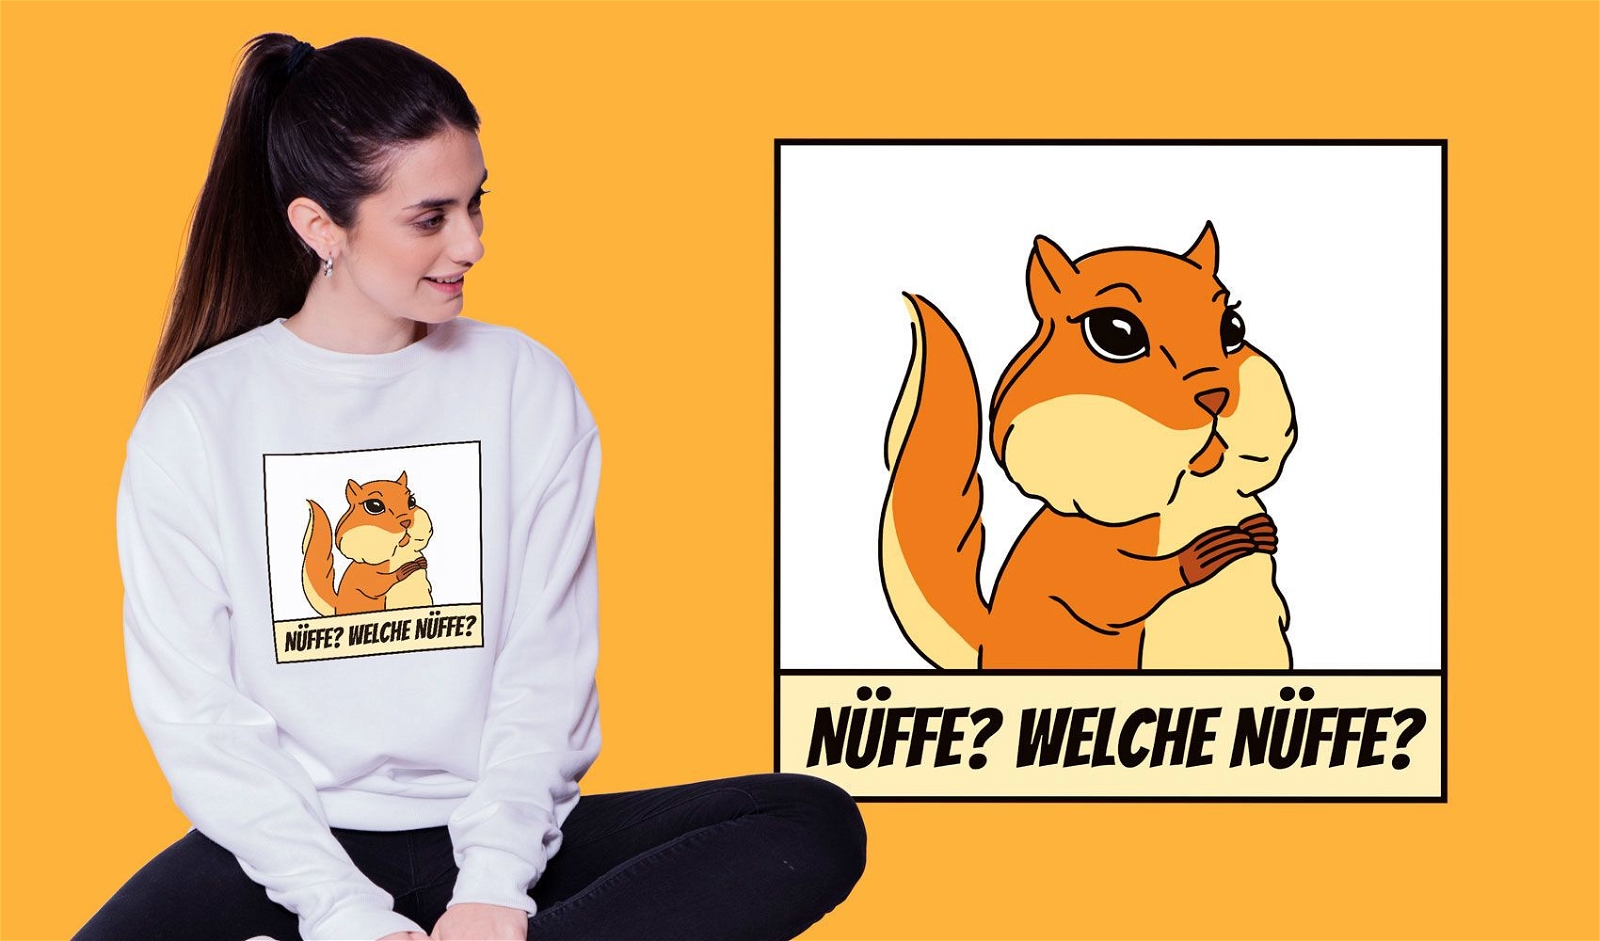 Lustiges deutsches Eichh?rnchen-T-Shirt Design